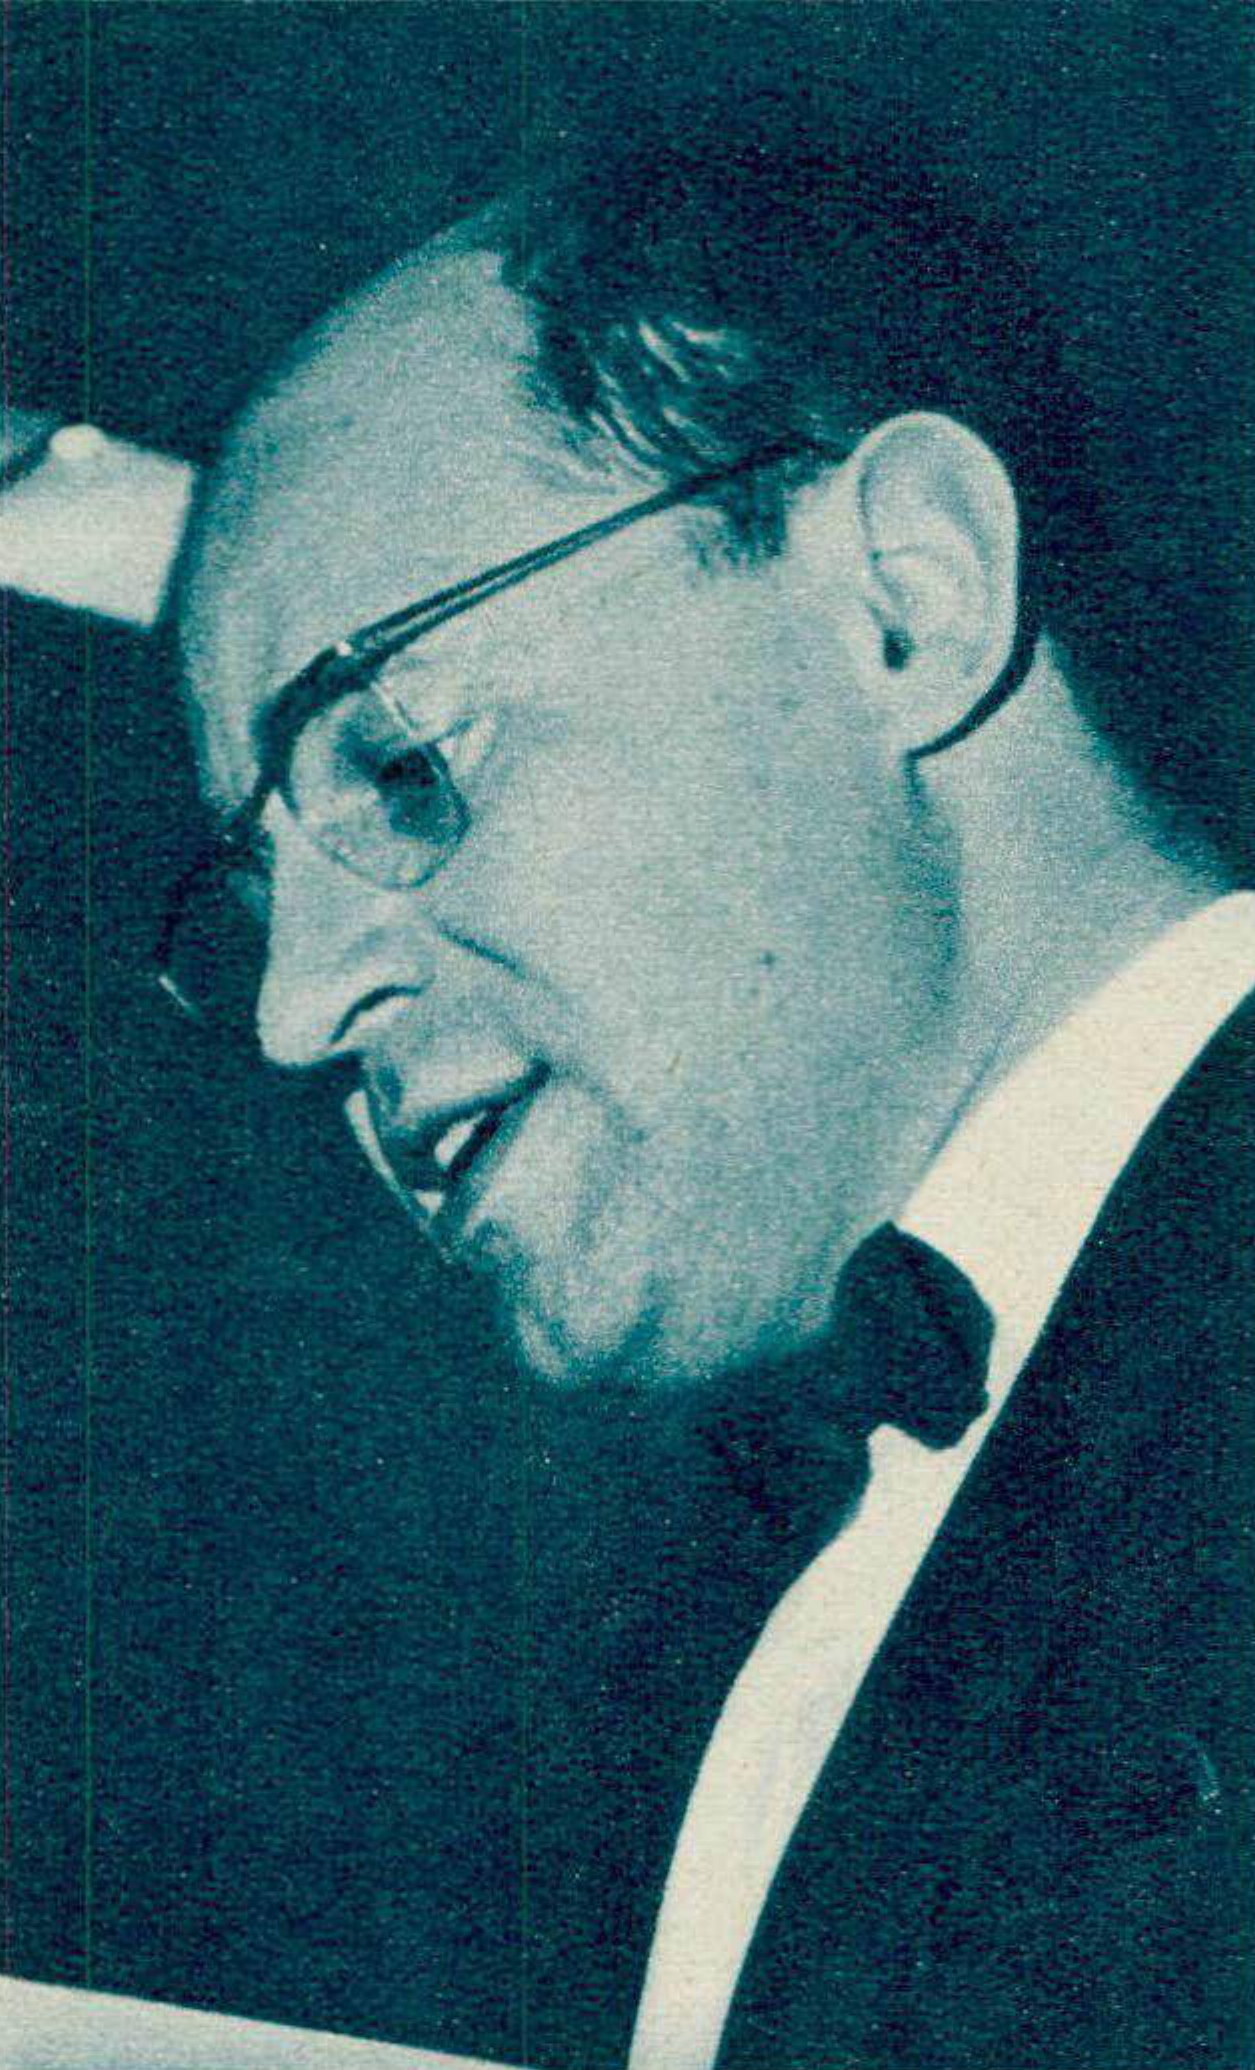 Pierre BOULEZ lors d'une conférence à Donaueschingen en 1962, „Radio TV Je vois tout“ du 1er novembre 1962, No 44, page 16